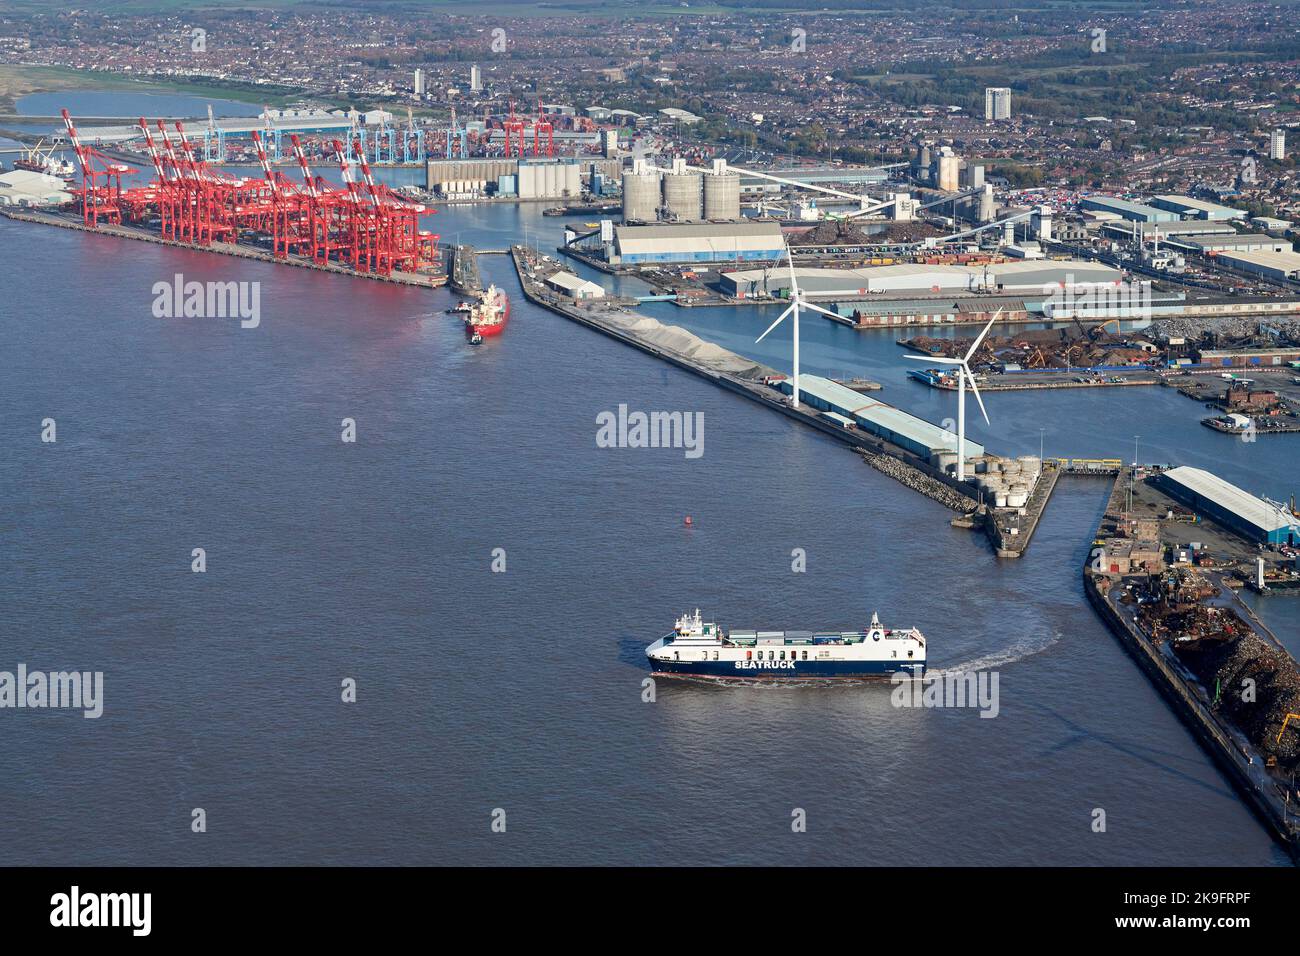 Une vue aérienne du ferry de Seatruck Progress Isle of Man, en quittant Liverpool, Merseyside, Liverpool, nord-ouest de l'Angleterre, ROYAUME-UNI Banque D'Images